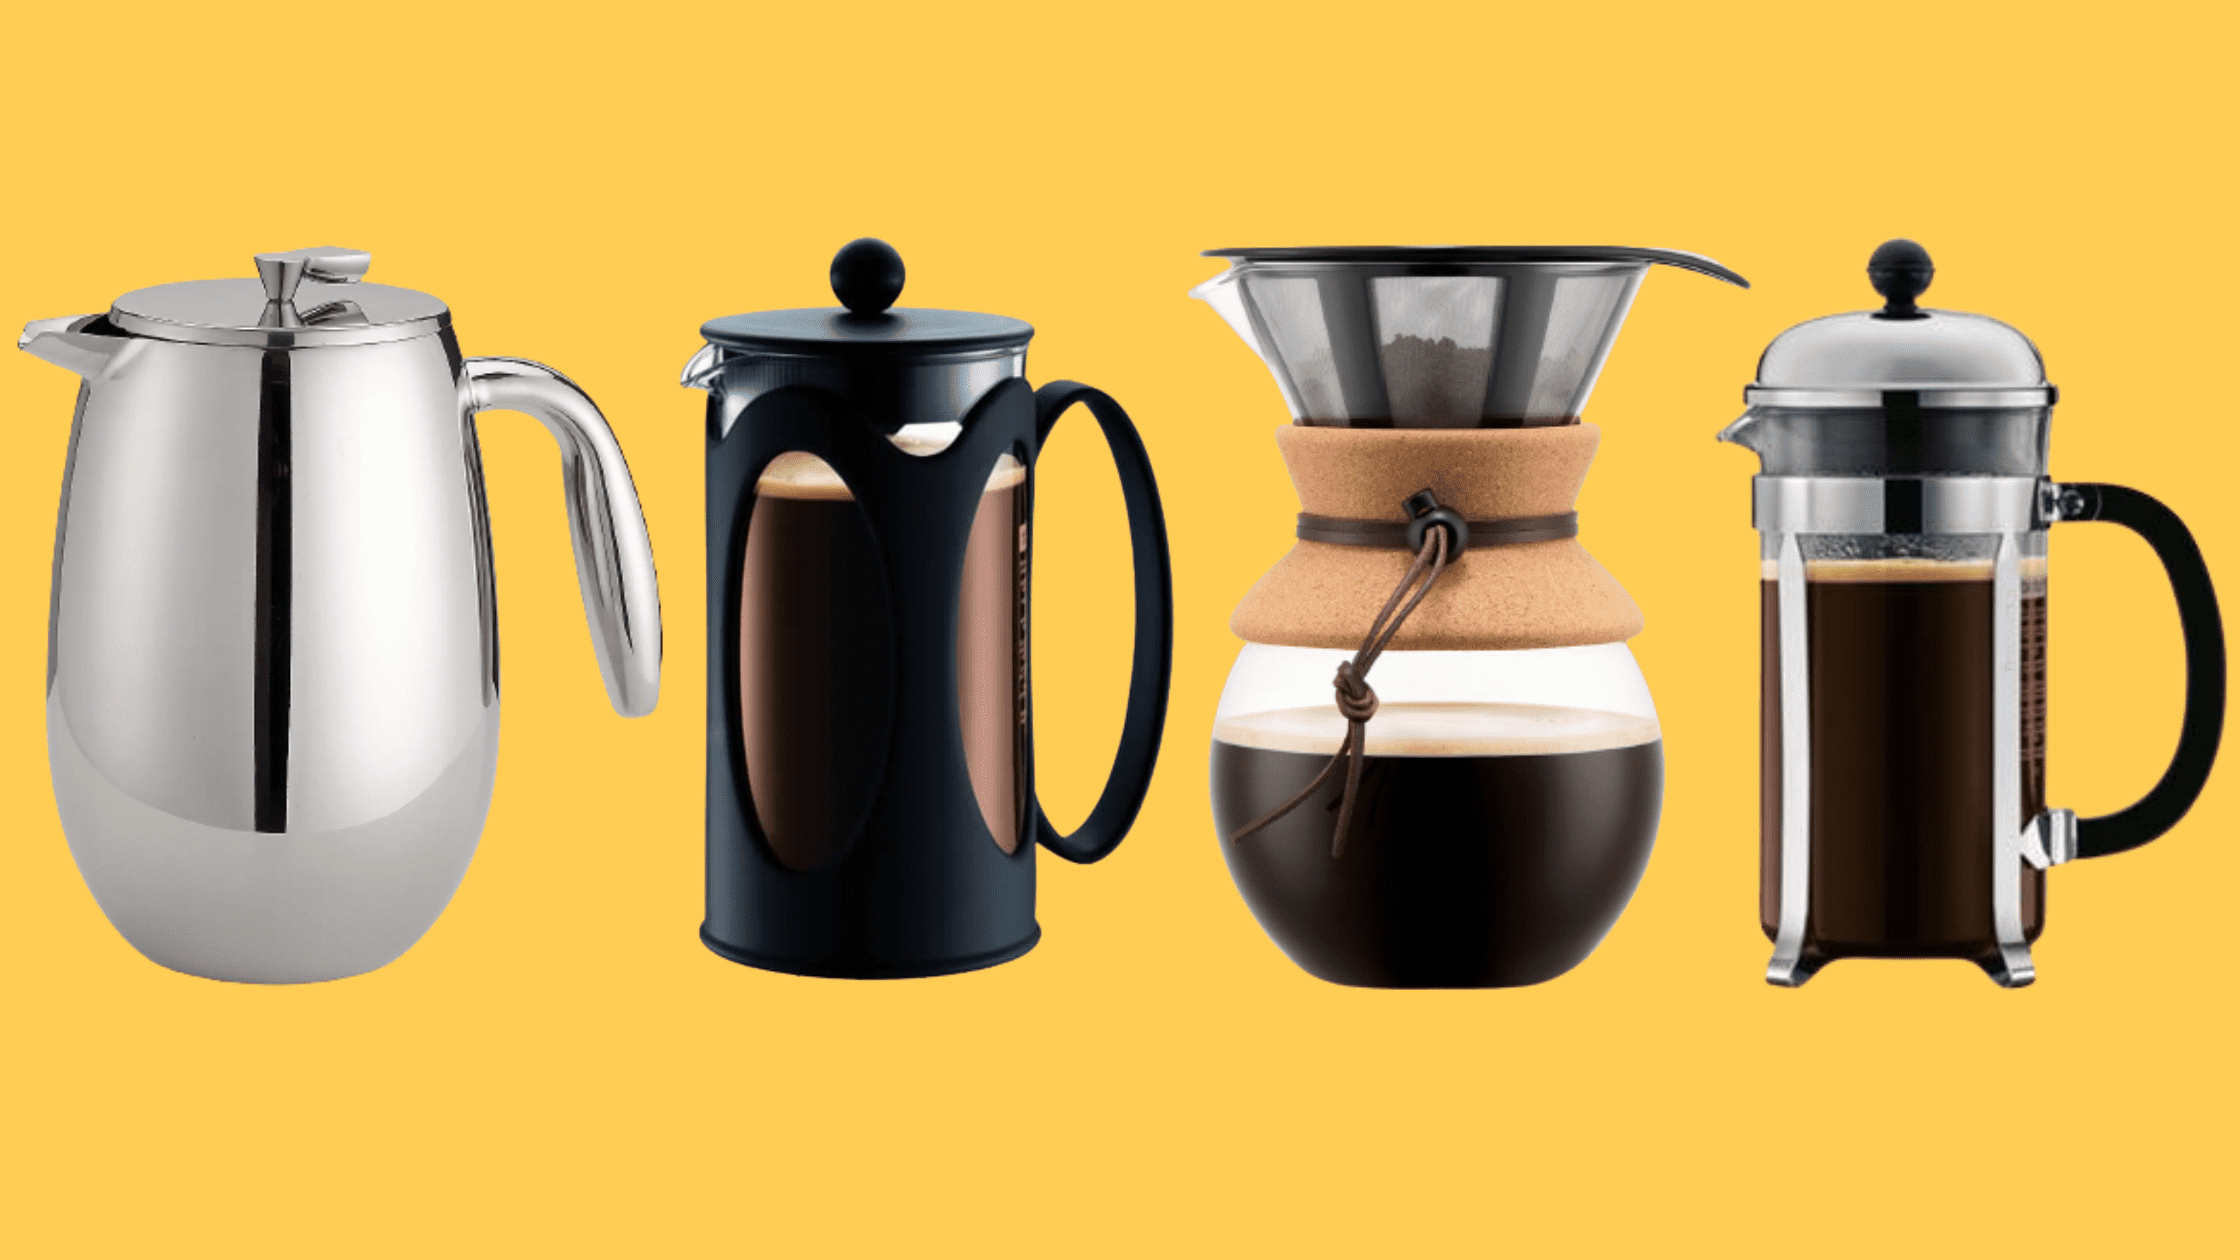 Objet tendance : Une cafetière manuelle pour retrouver le plaisir d'un bon  café